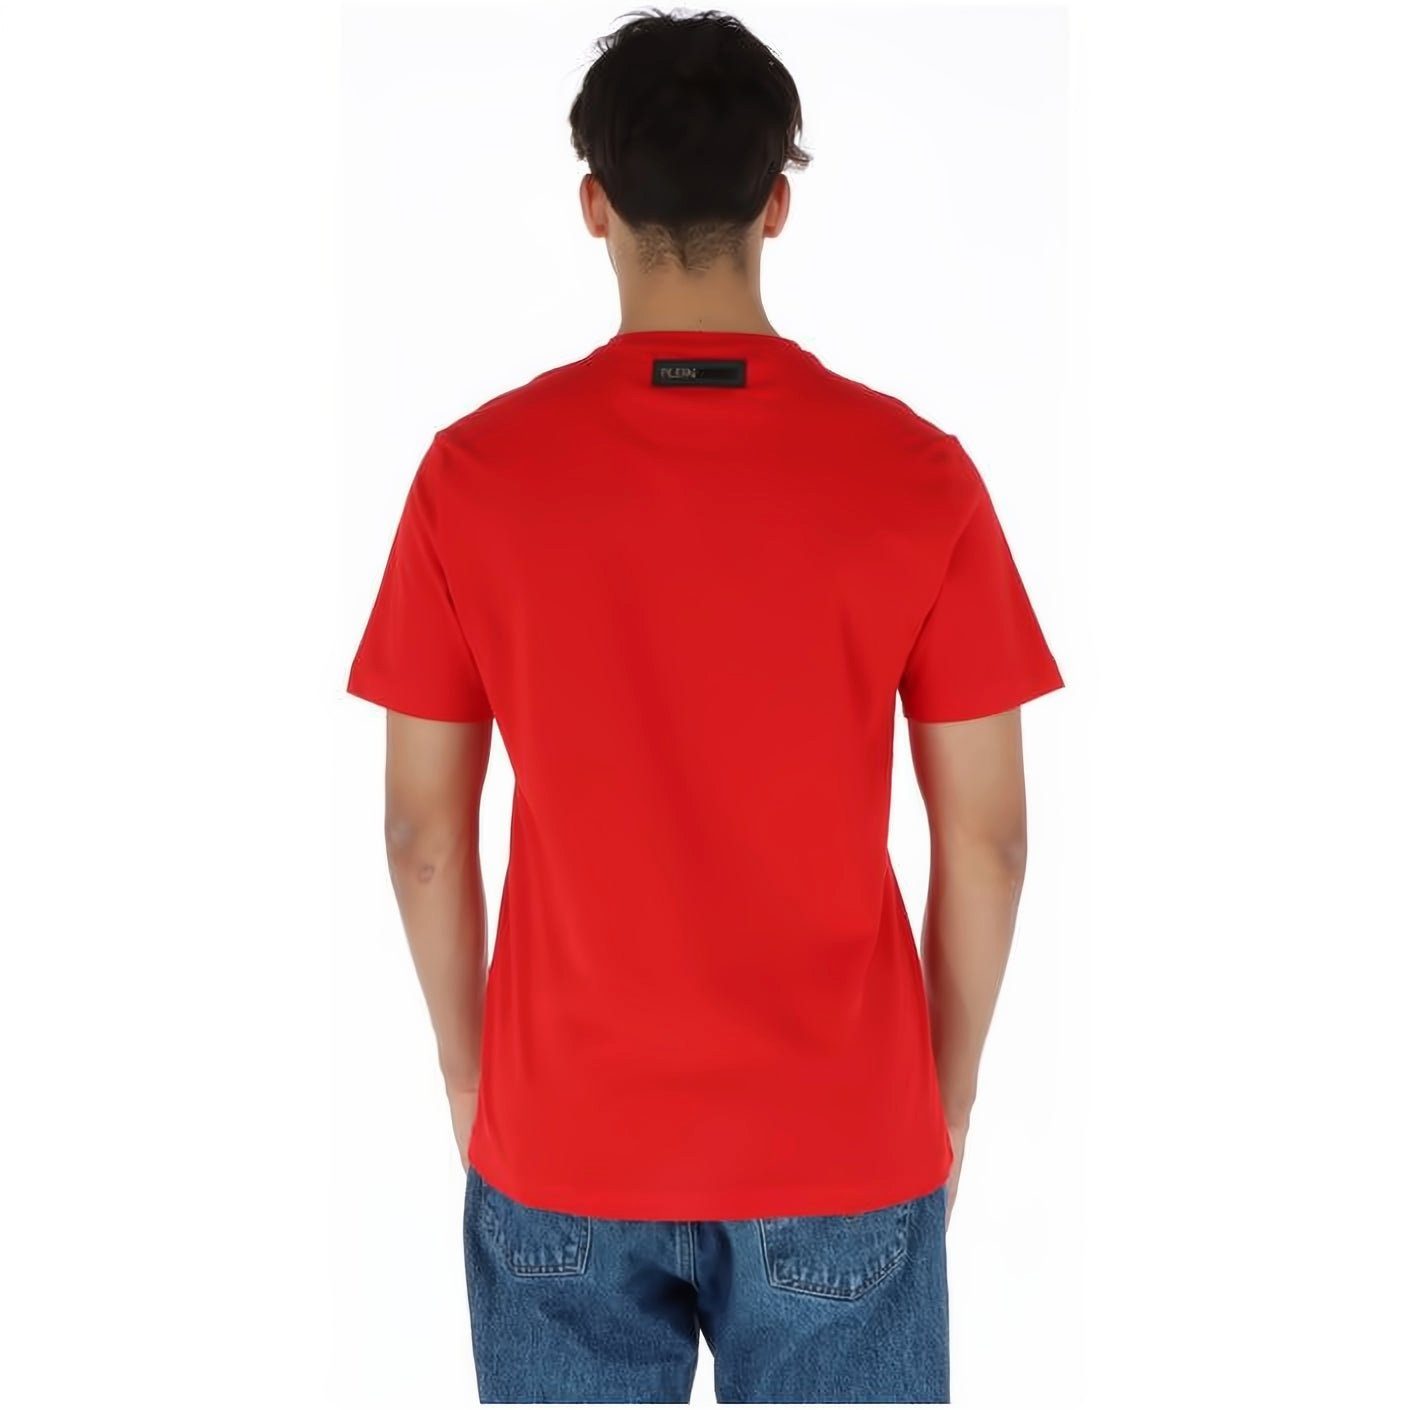 PLEIN SPORT T-Shirt ROUND Look, vielfältige Tragekomfort, Farbauswahl NECK hoher Stylischer